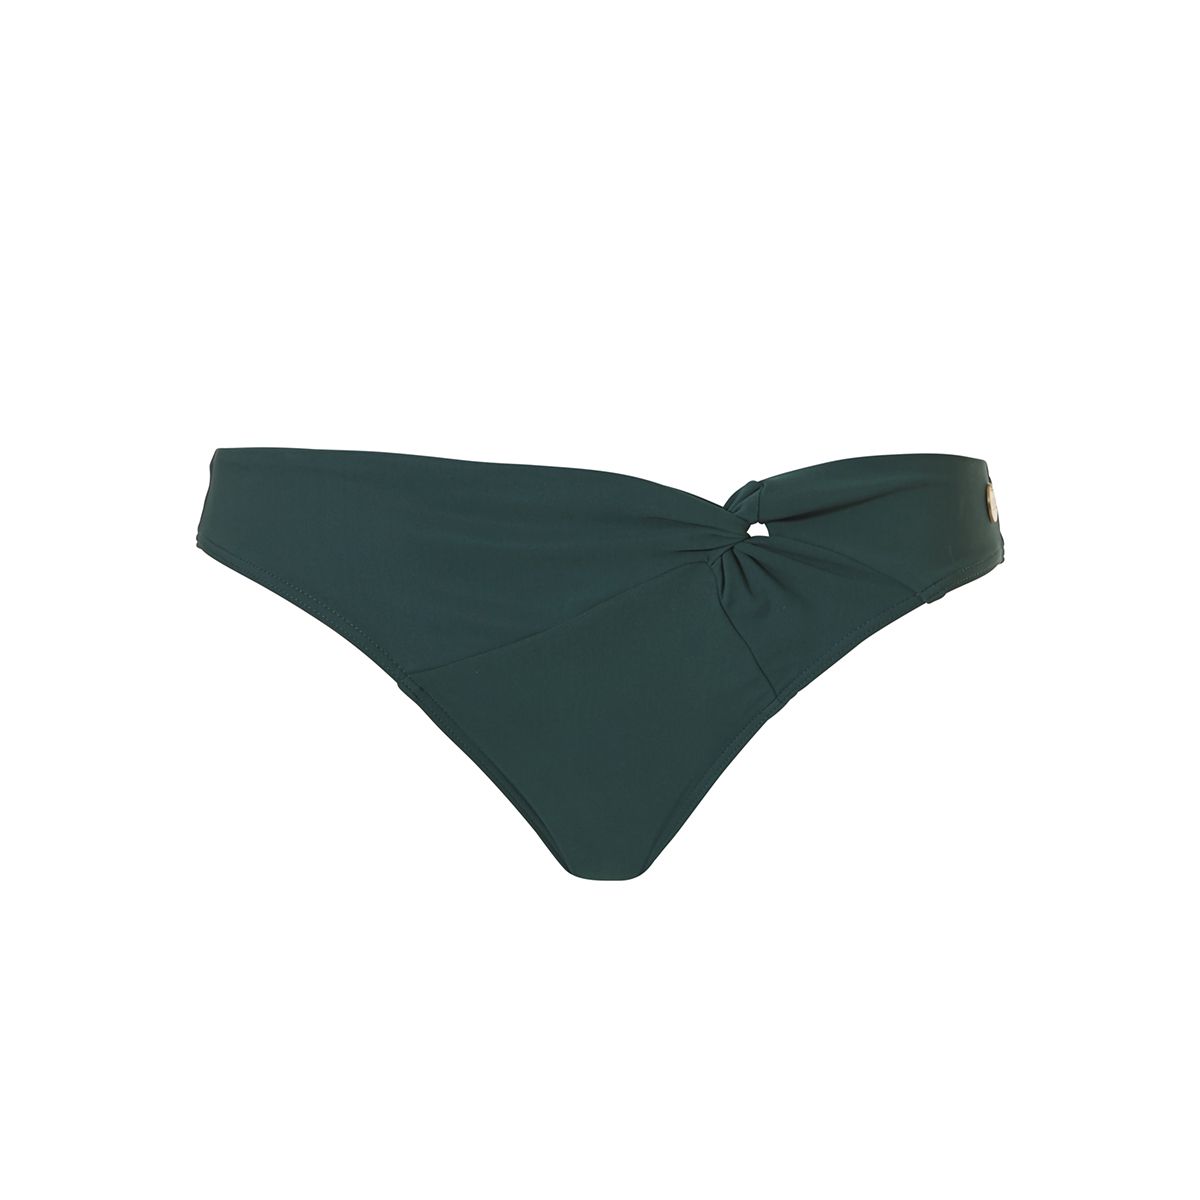 Groen bikini broekje Knotbrief WoW - 20108 2095